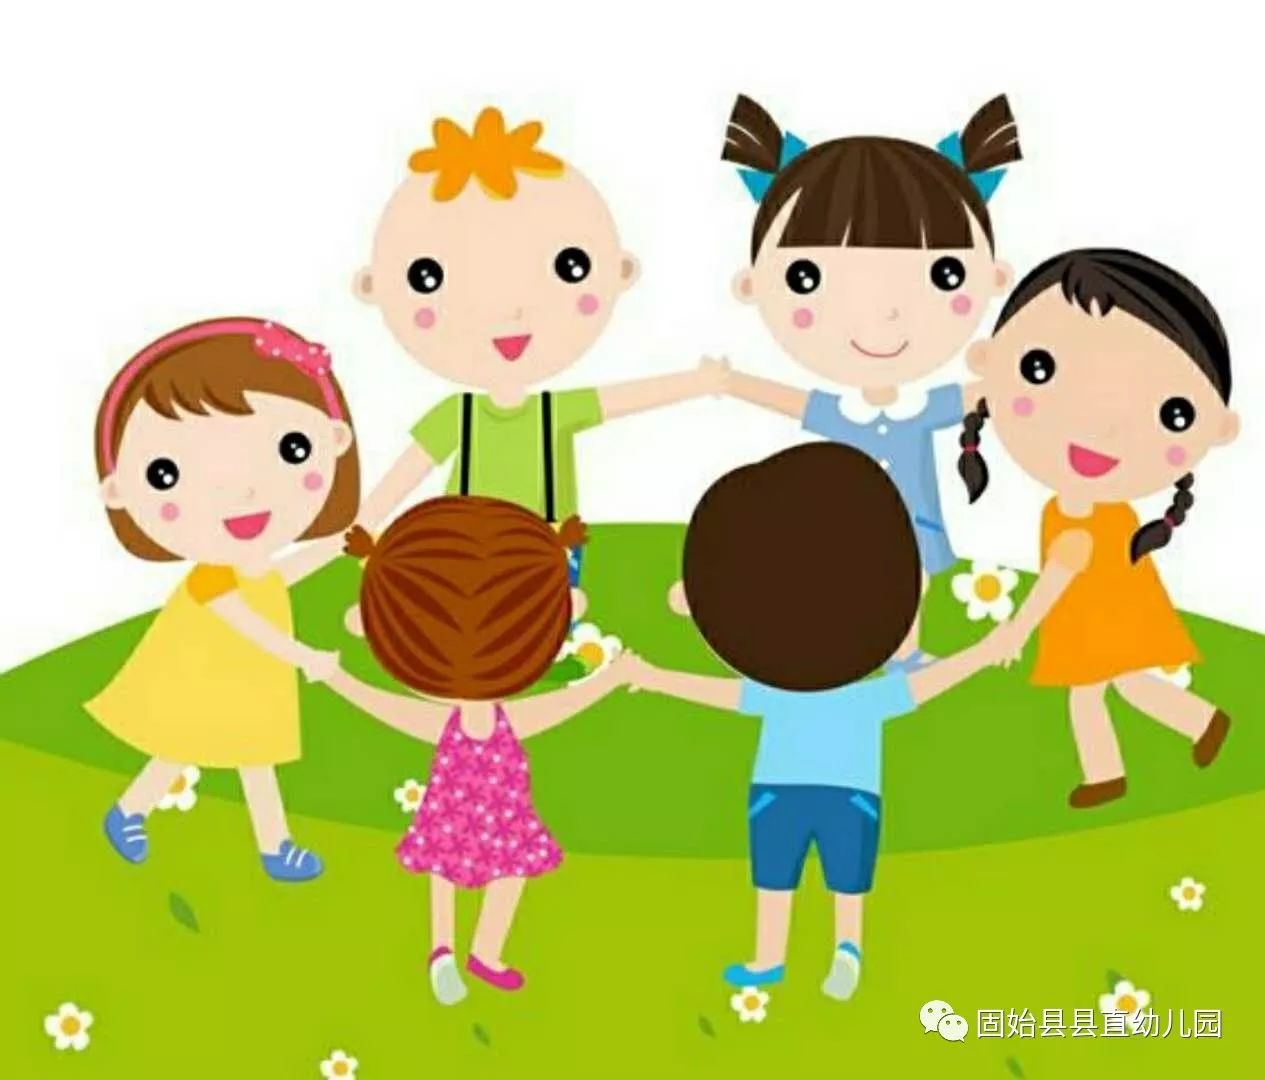 游戏点亮快乐童年,游戏开启美好人生——县直幼儿园迎